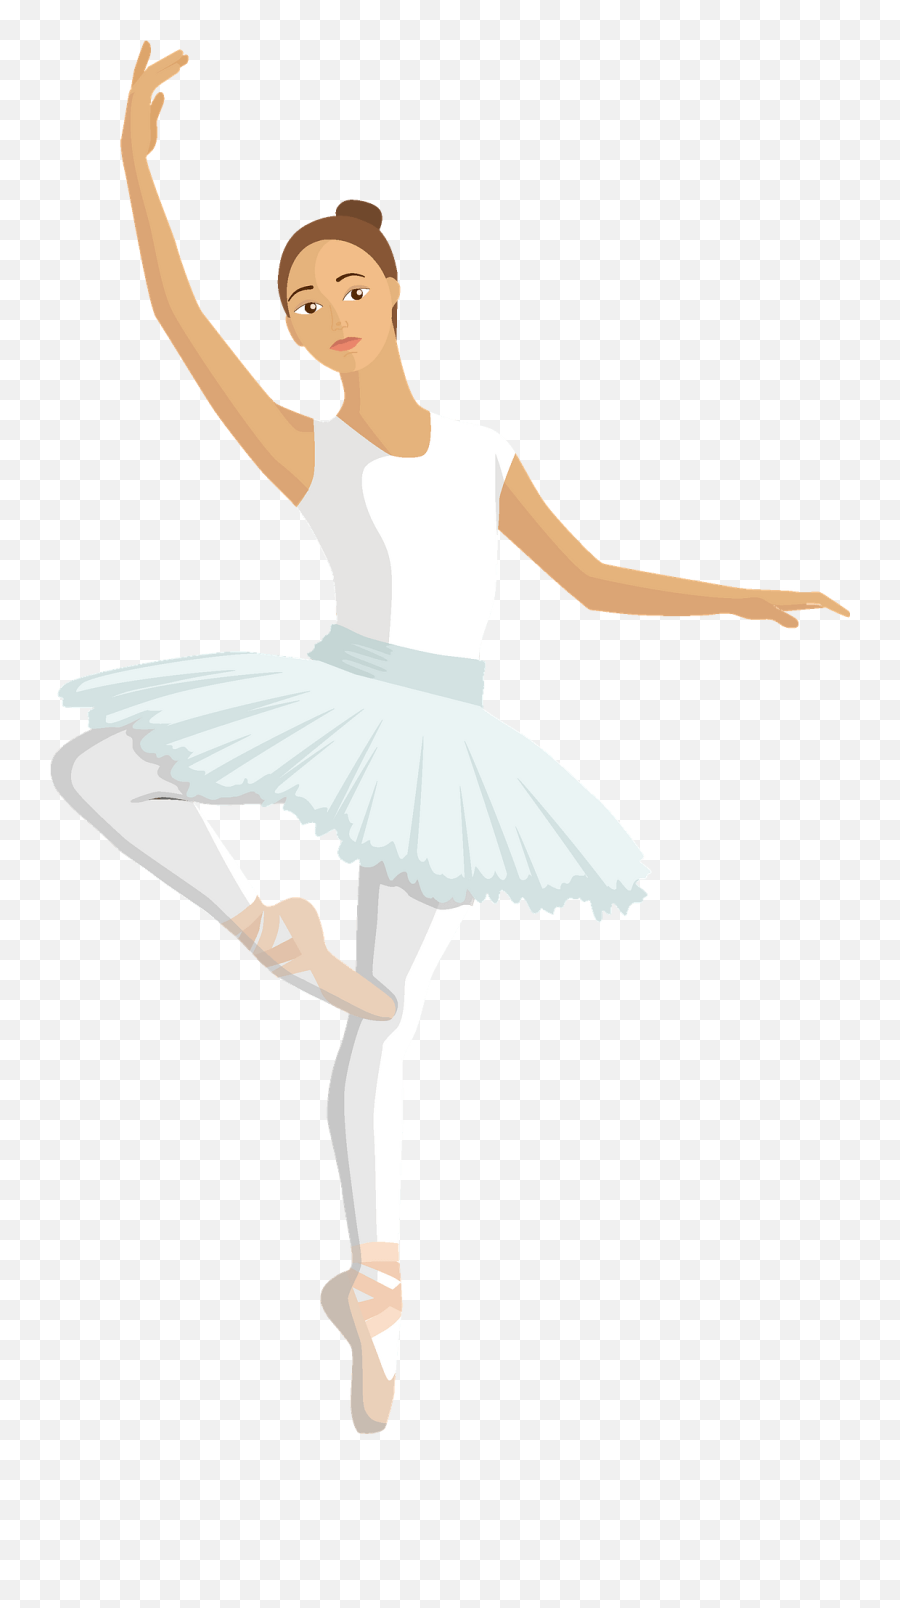 Ballet Dancer Clipart Free Download Transparent Png - Ballet,Tutu Png